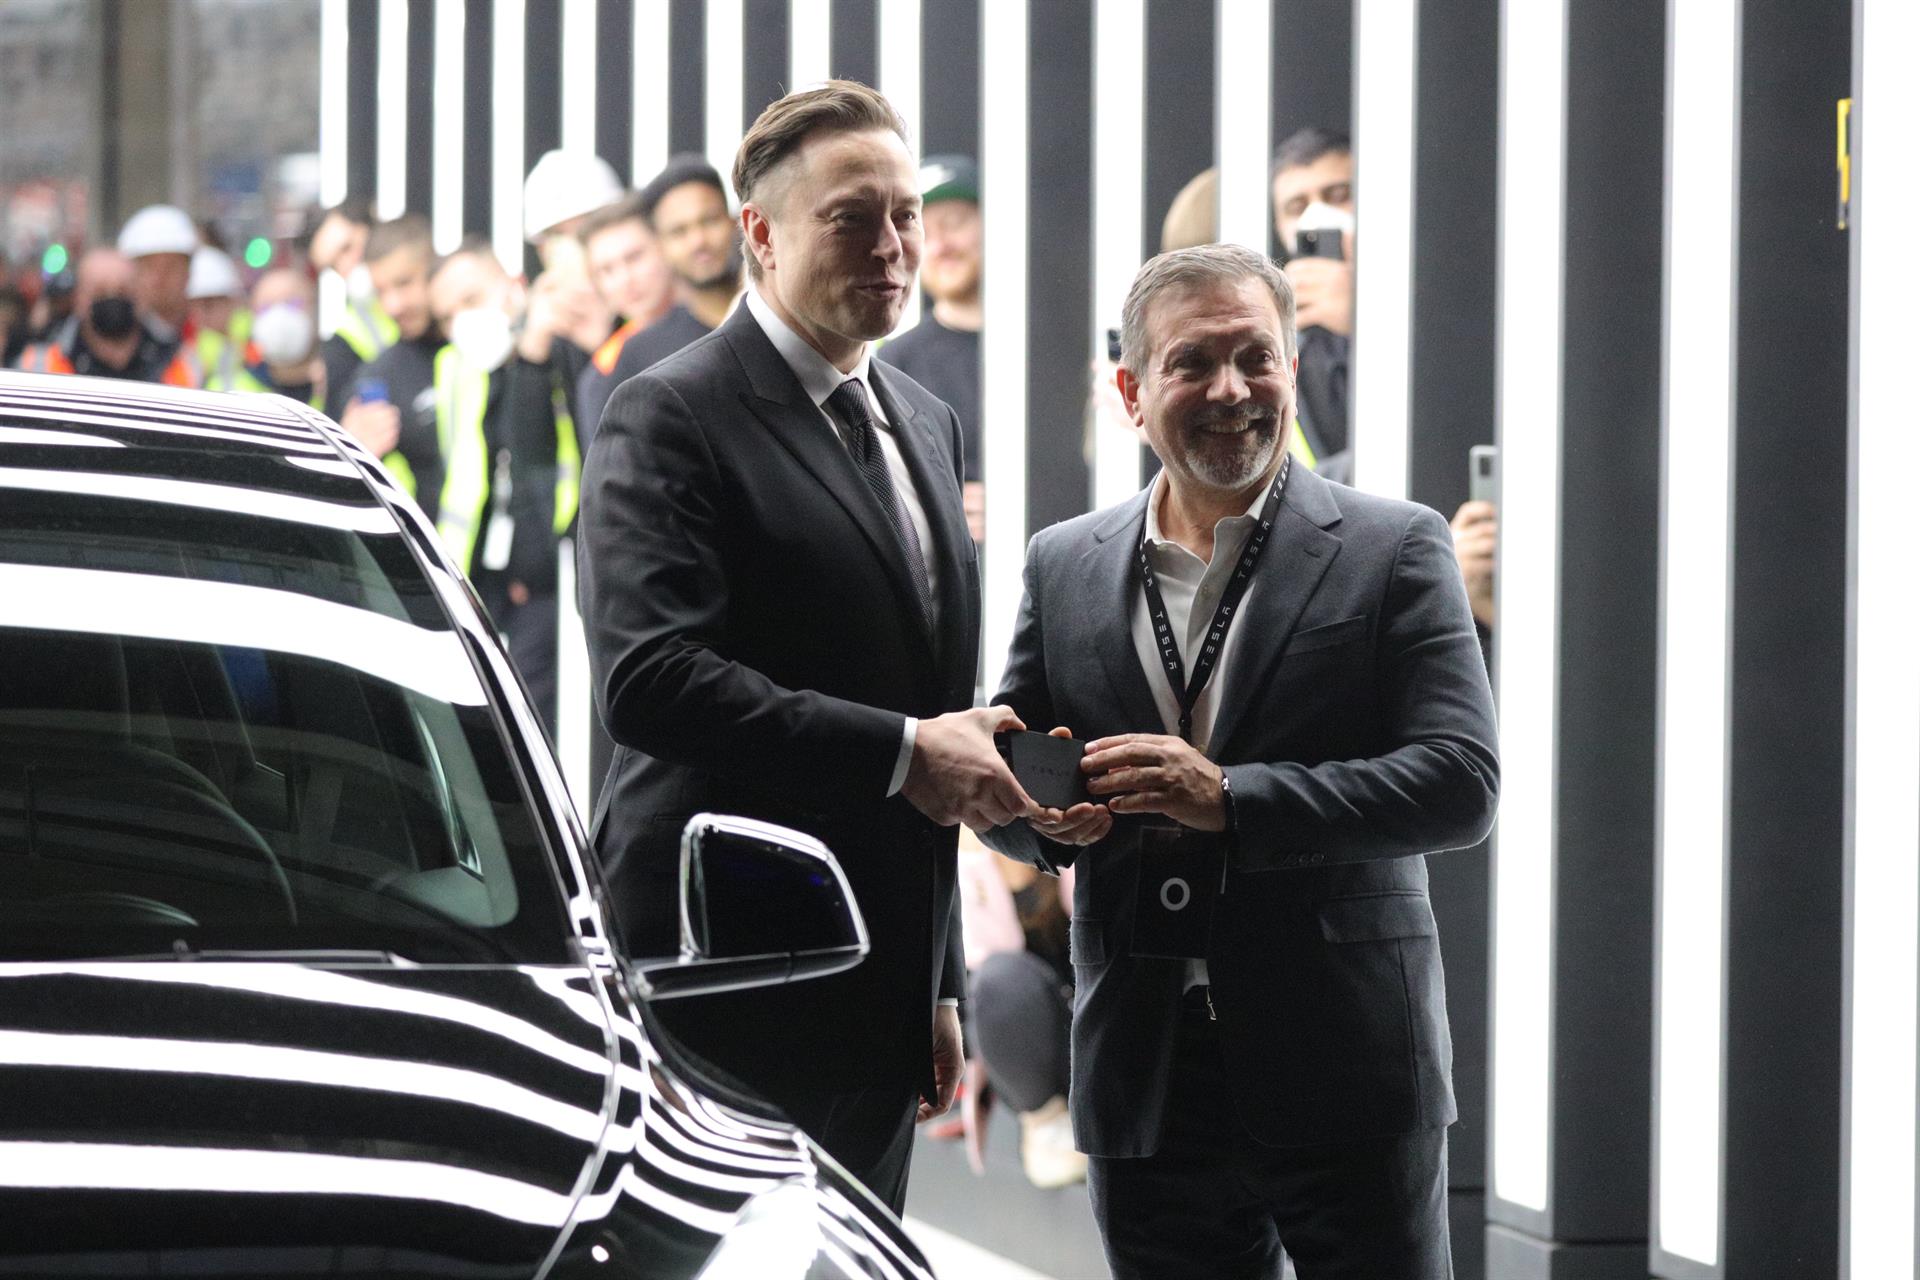 AME7061. GRUENHEIDE (ALEMANIA), 22/03/2022.- Fotografía de archivo fechada el 22 de marzo de 2022 que muestra al director general de Tesla, Elon Musk (i), mientras participa en la inauguración de la 'Gigafábrica' de Tesla en Gruenheide (Alemania). EFE/EPA/CHRISTIAN MARQUARDT / POOL